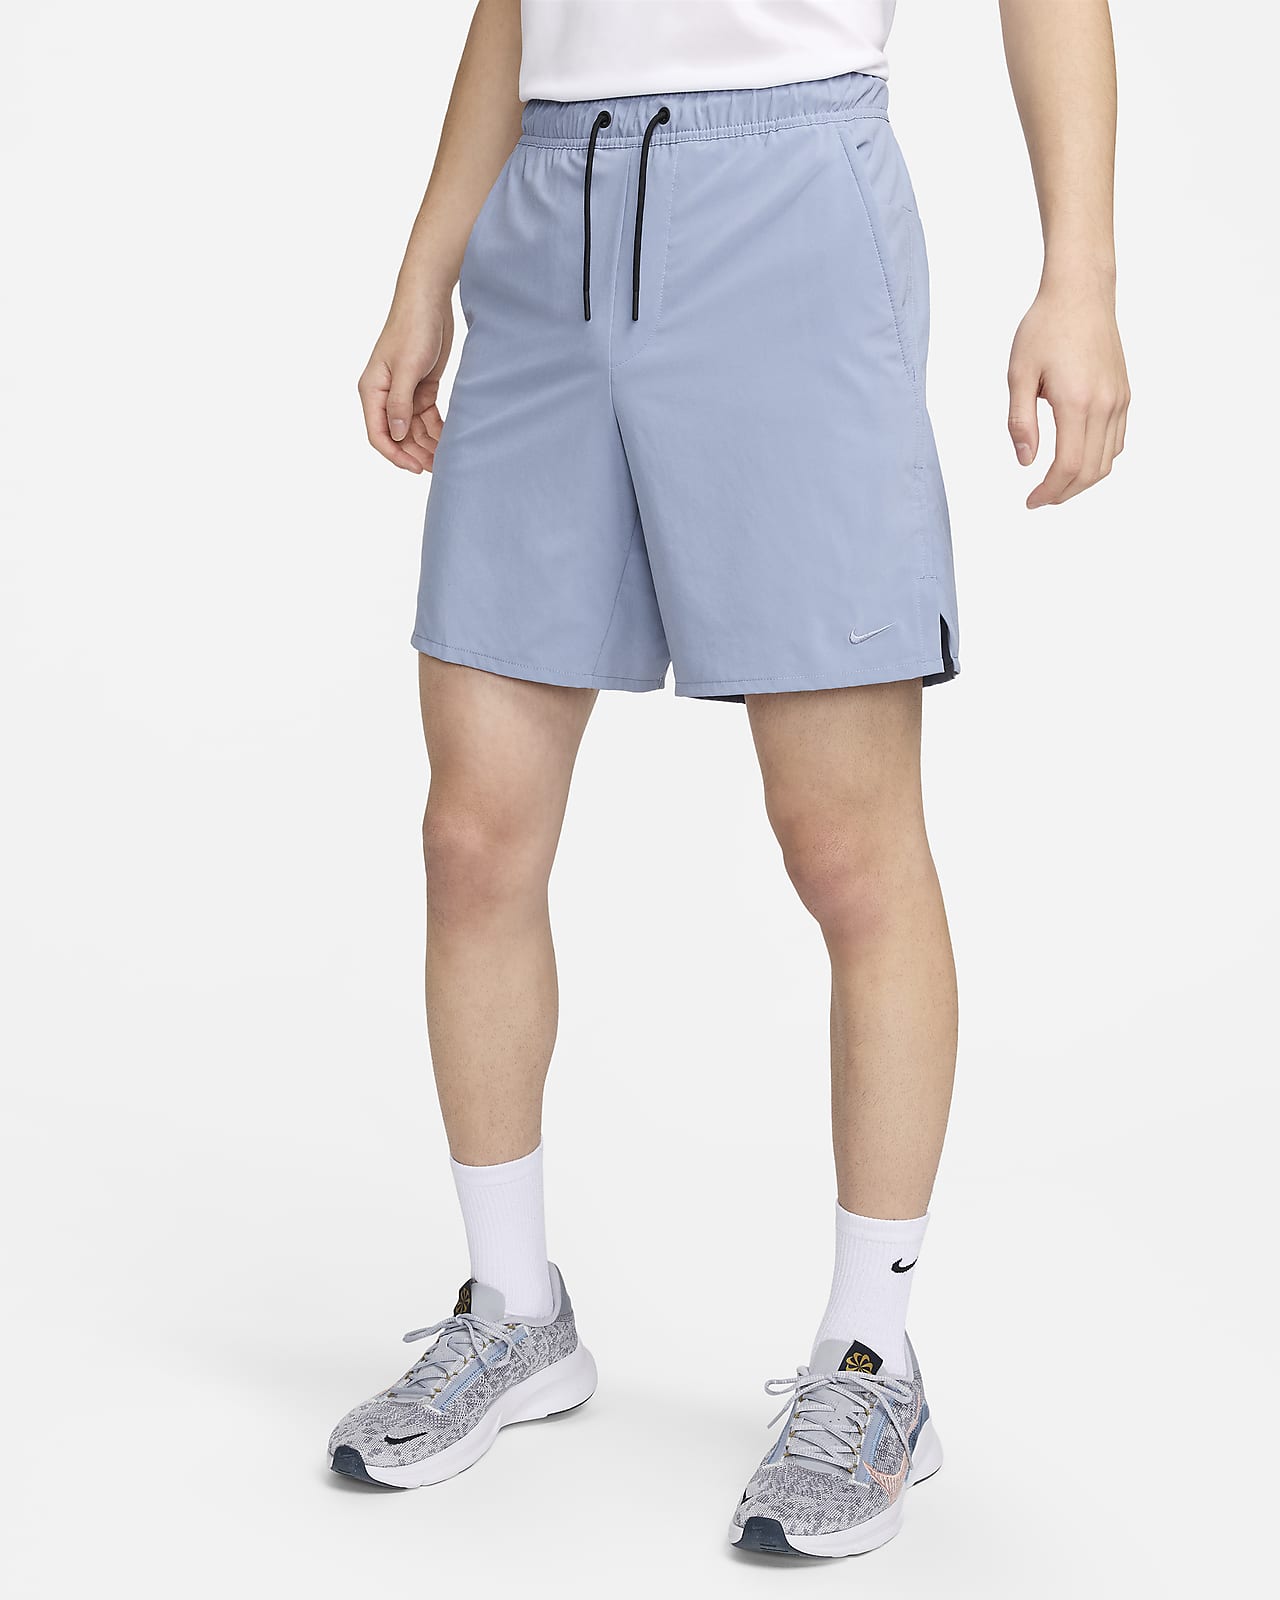 Nike Dri-FIT Unlimited Men's 7" Unlined Versatile Shorts